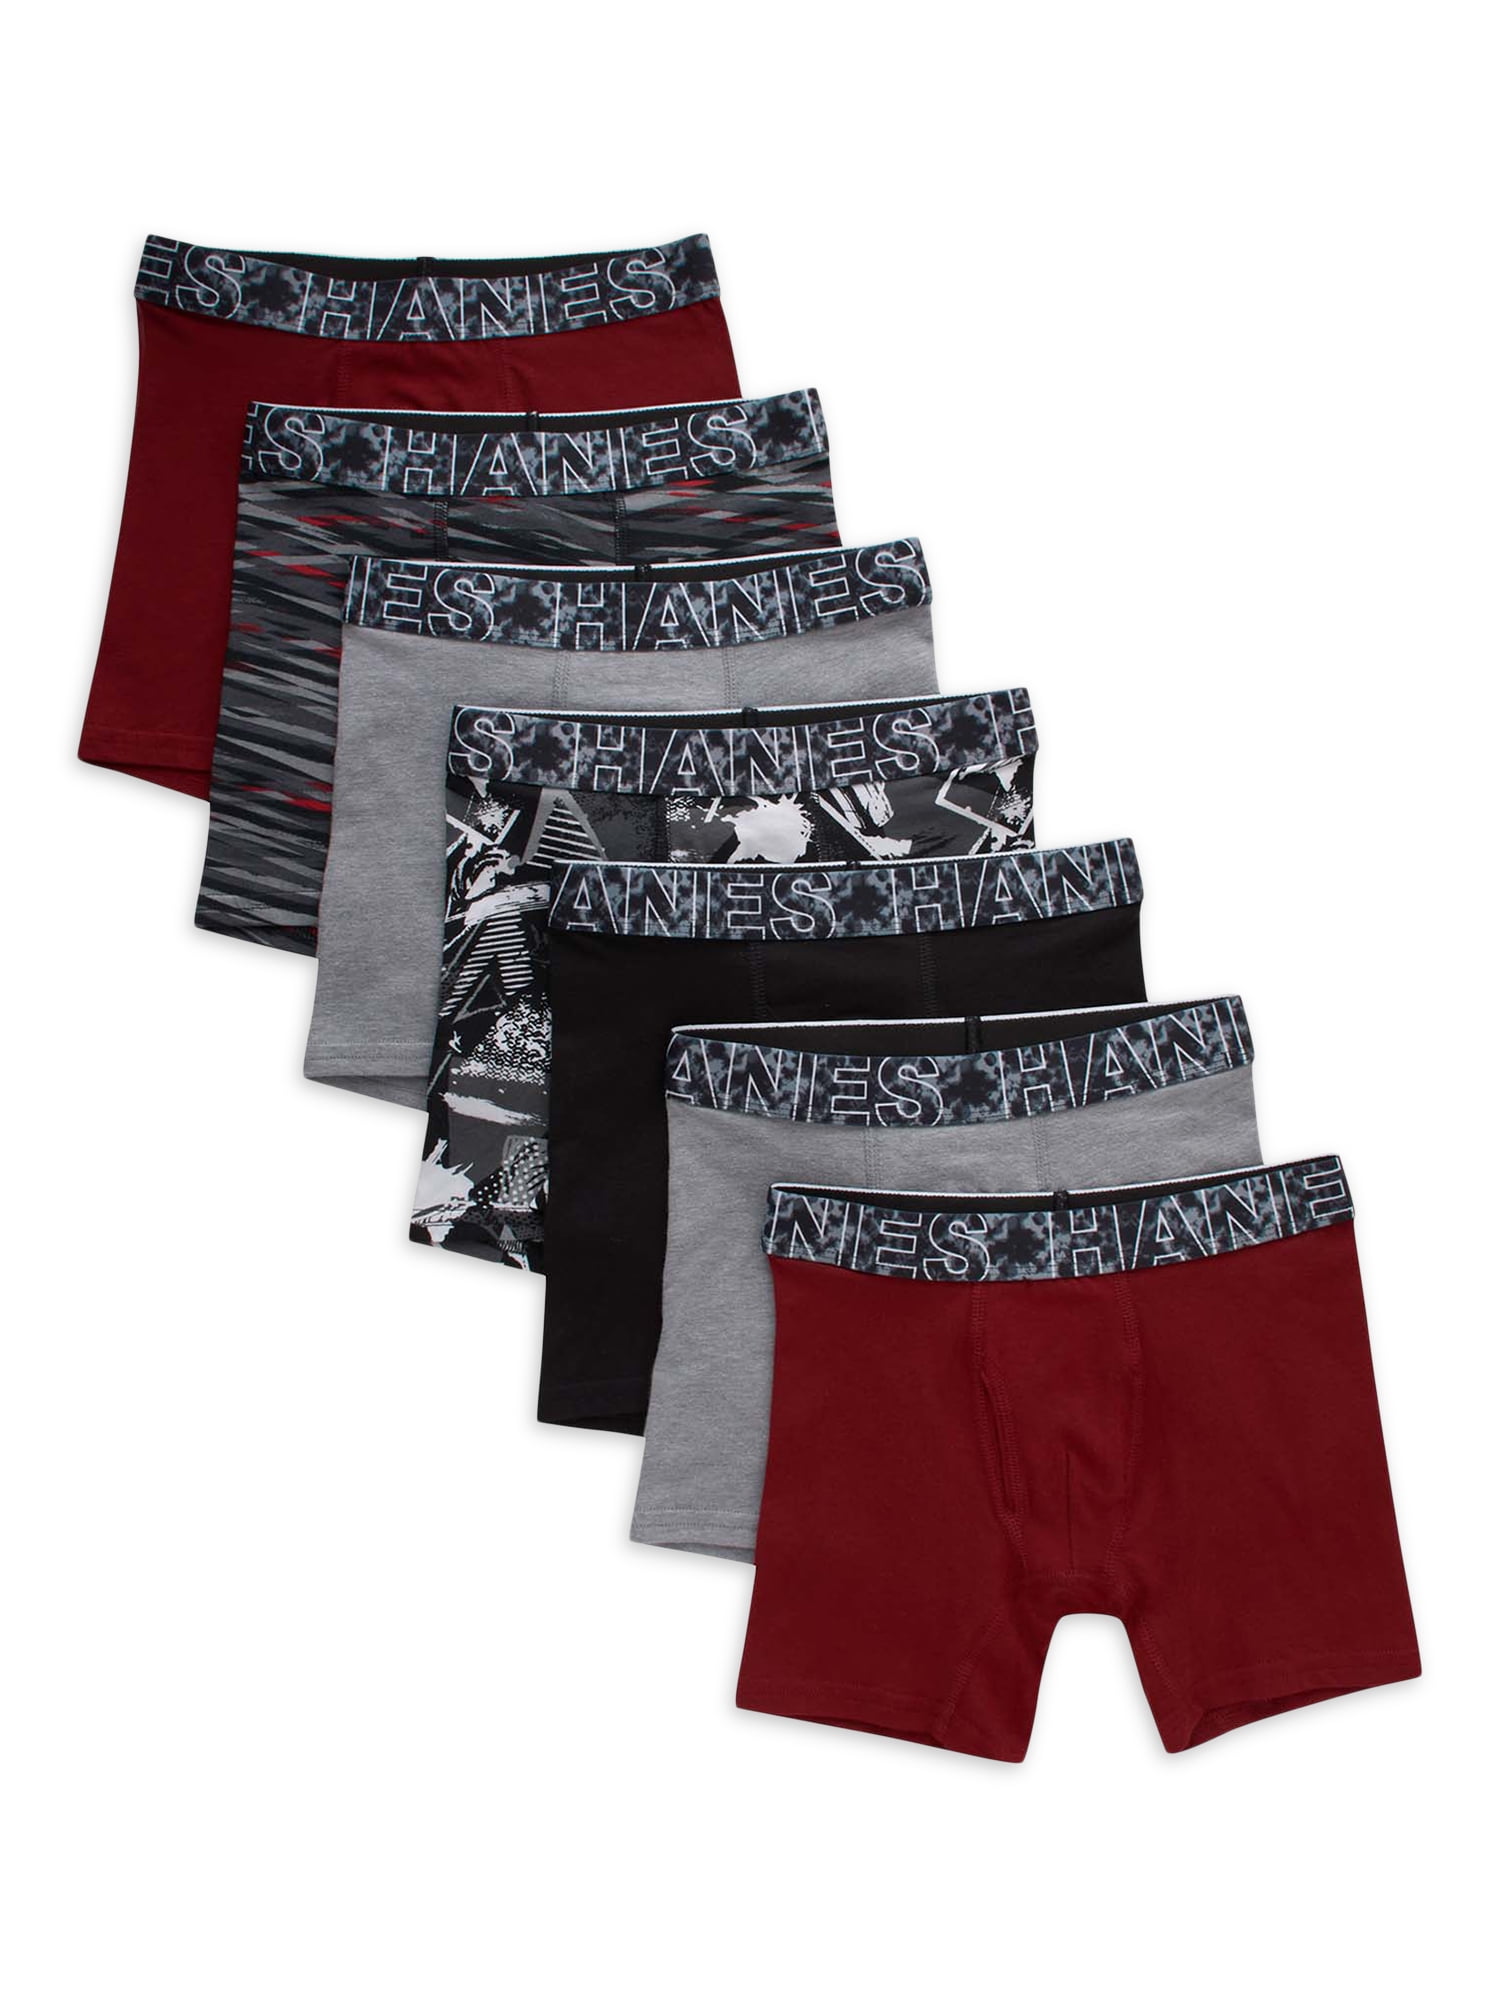 Hanes Boys Cotton-Stretch Boxer Briefs, 5+2 Bonus Pack, Sizes S-XL 